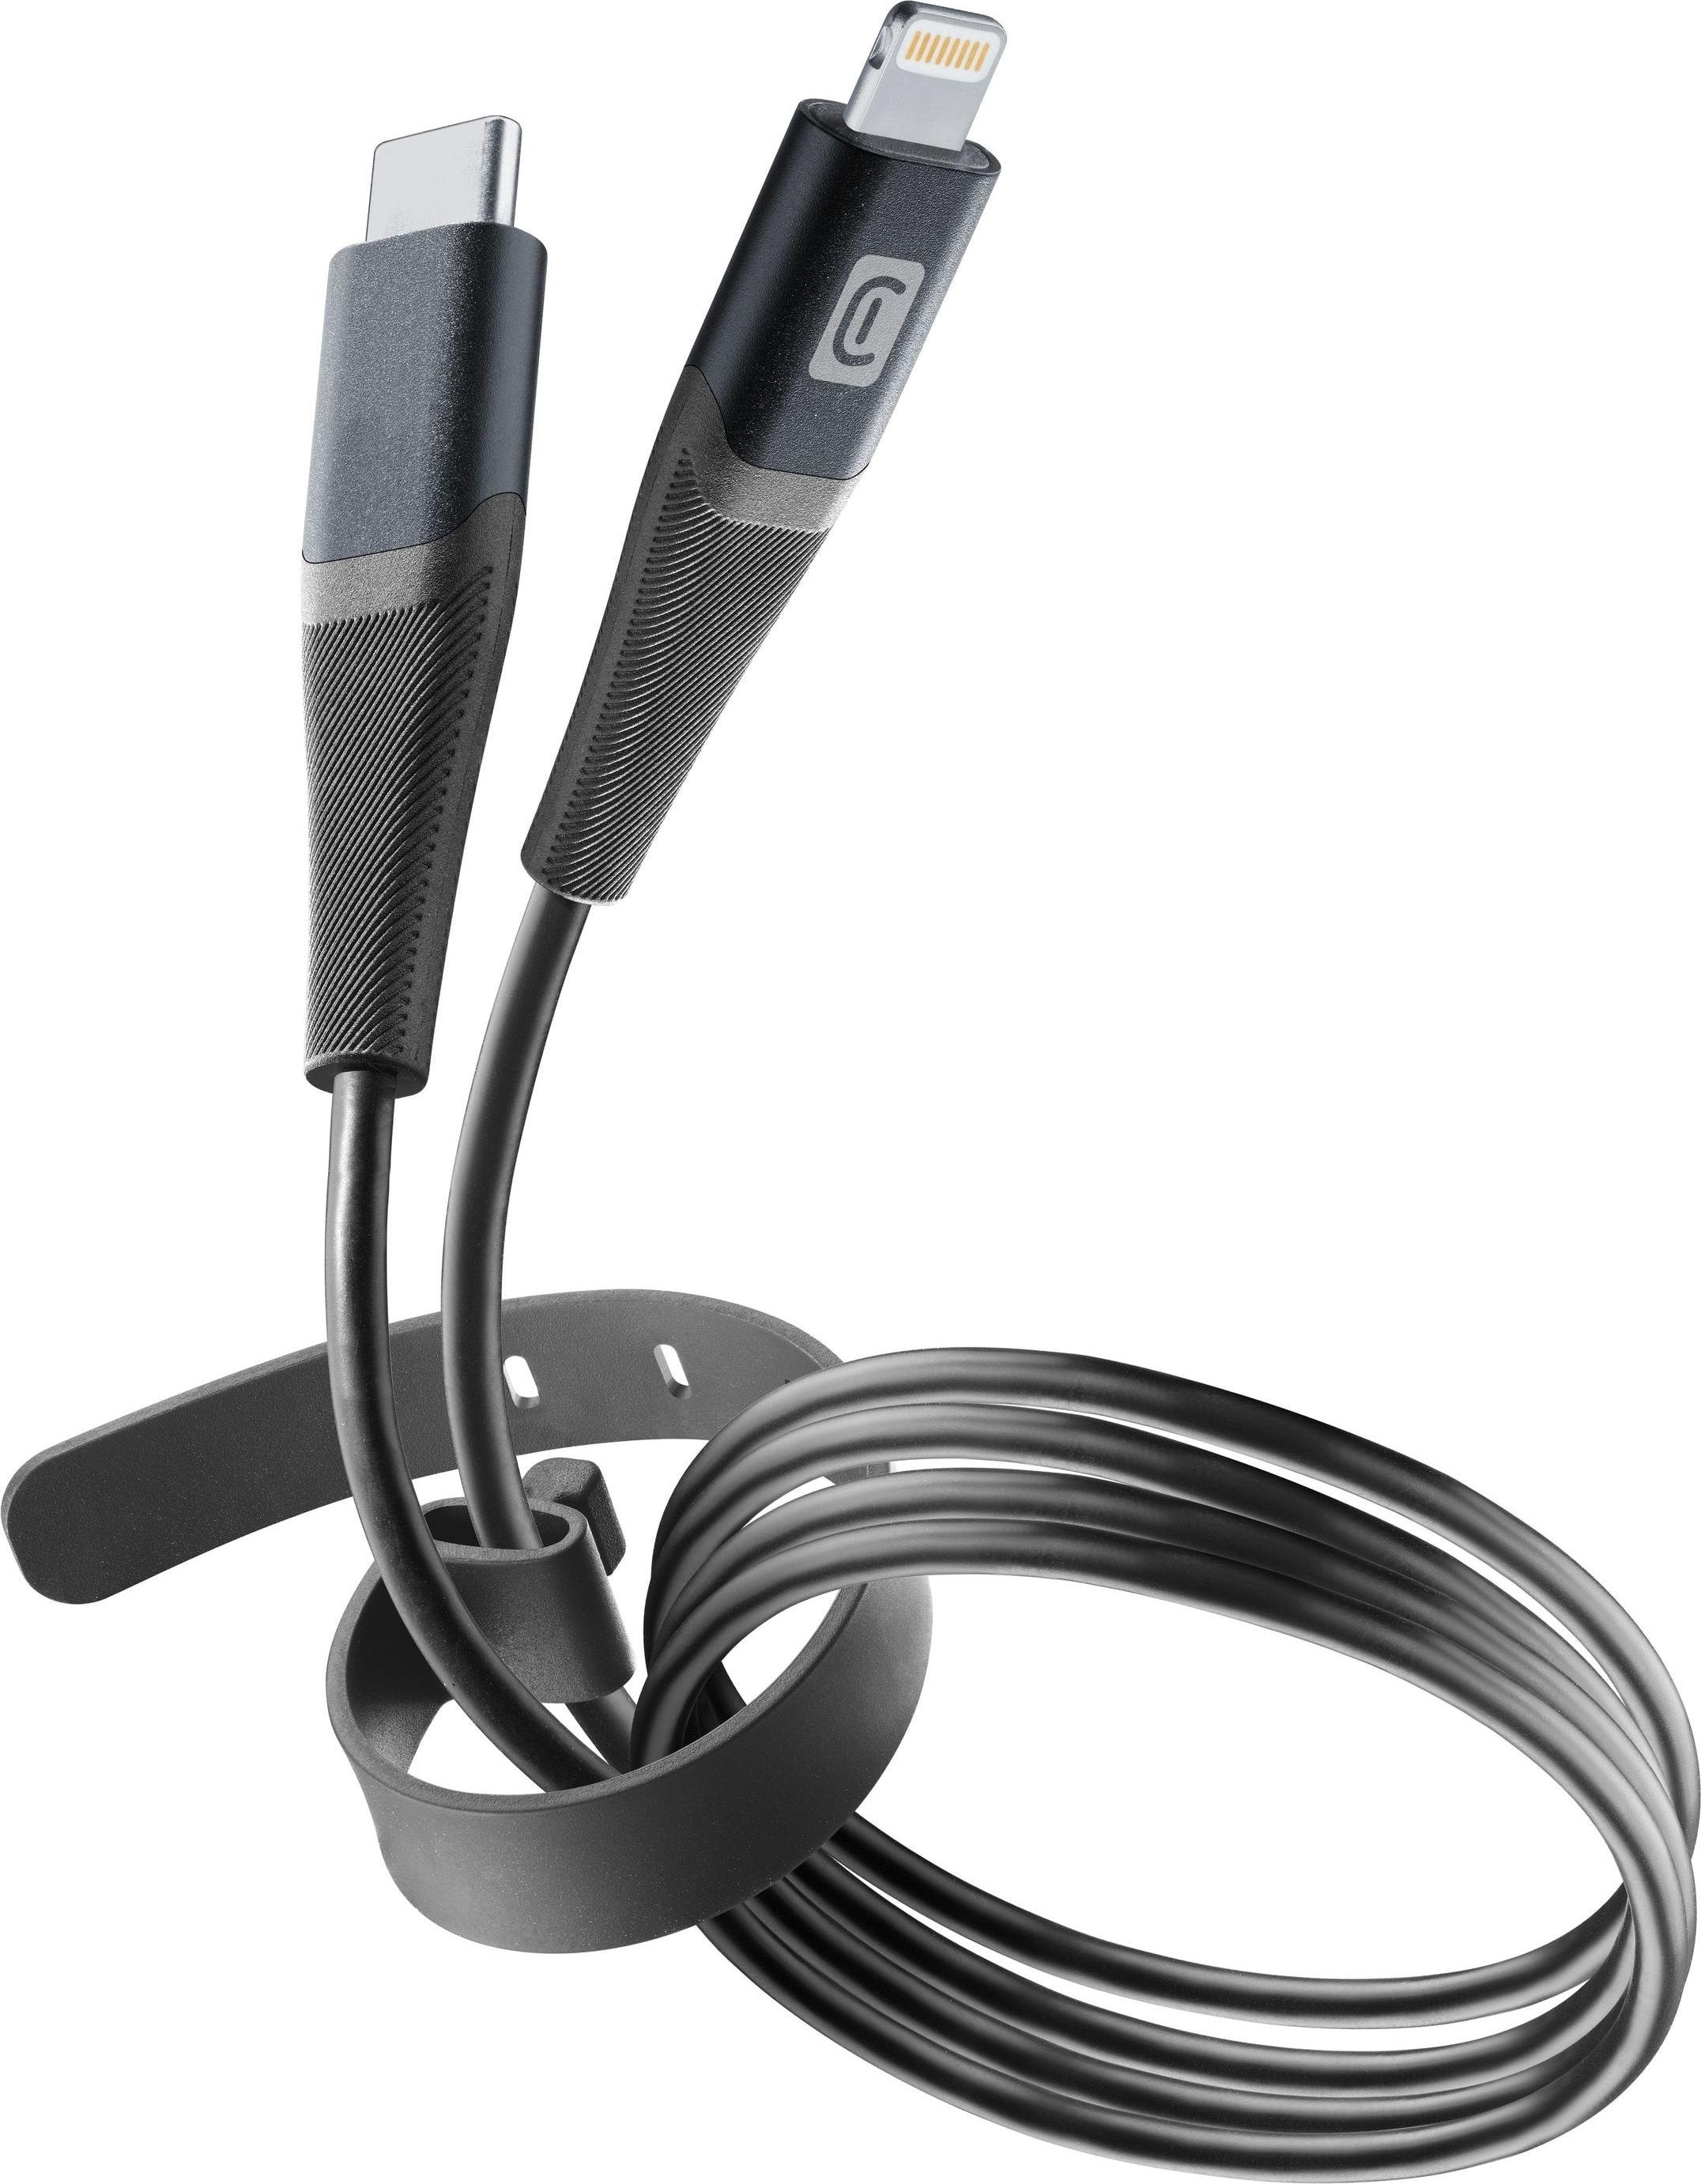 Peter Jäckel Cellularline Pro+ Data Cable Belt 1,2m USB Typ-C/ Apple Lightning Black (1.20 m), USB Kabel